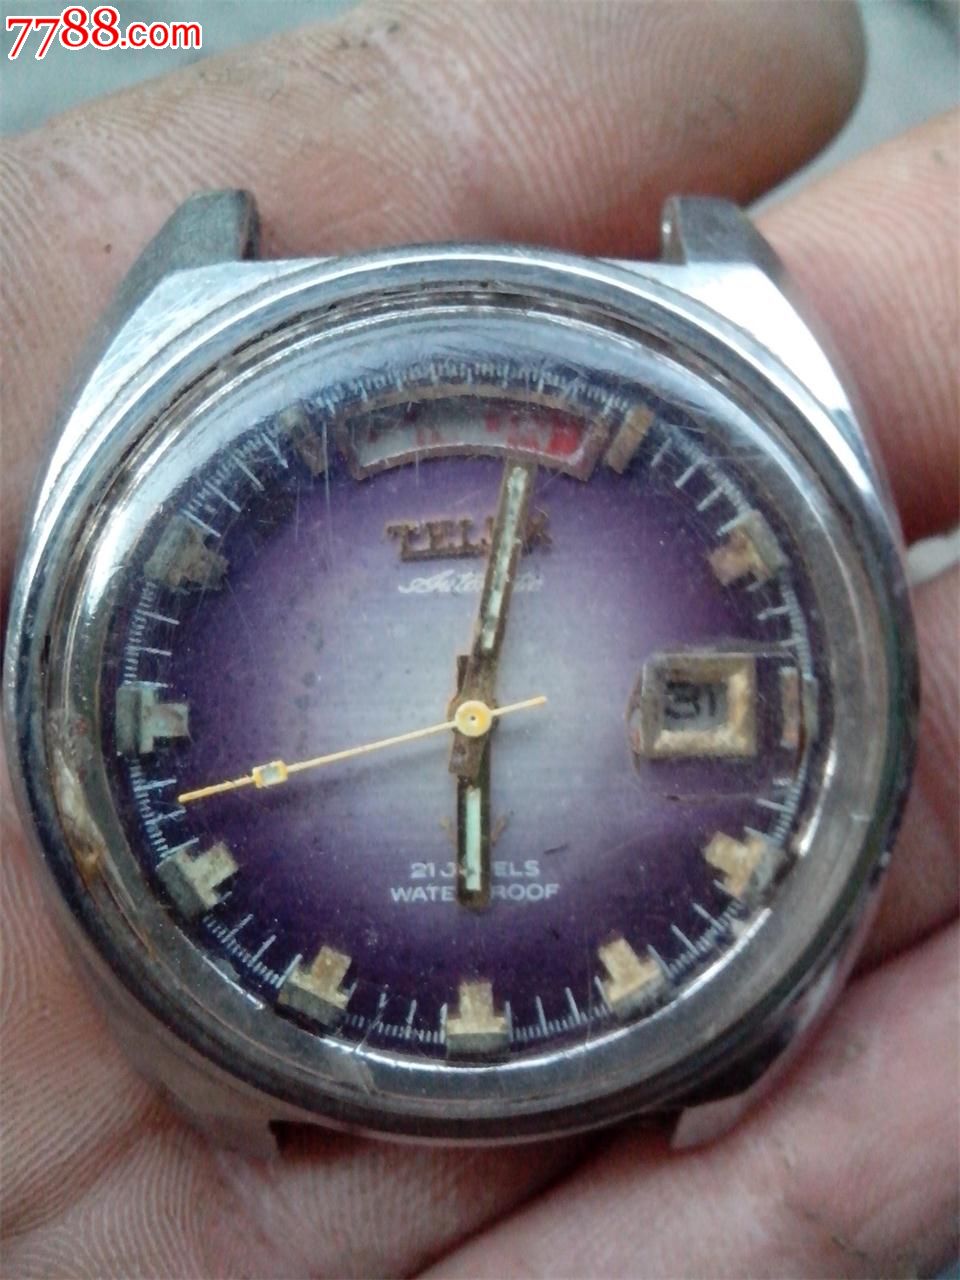 瑞士铁力士手表图片